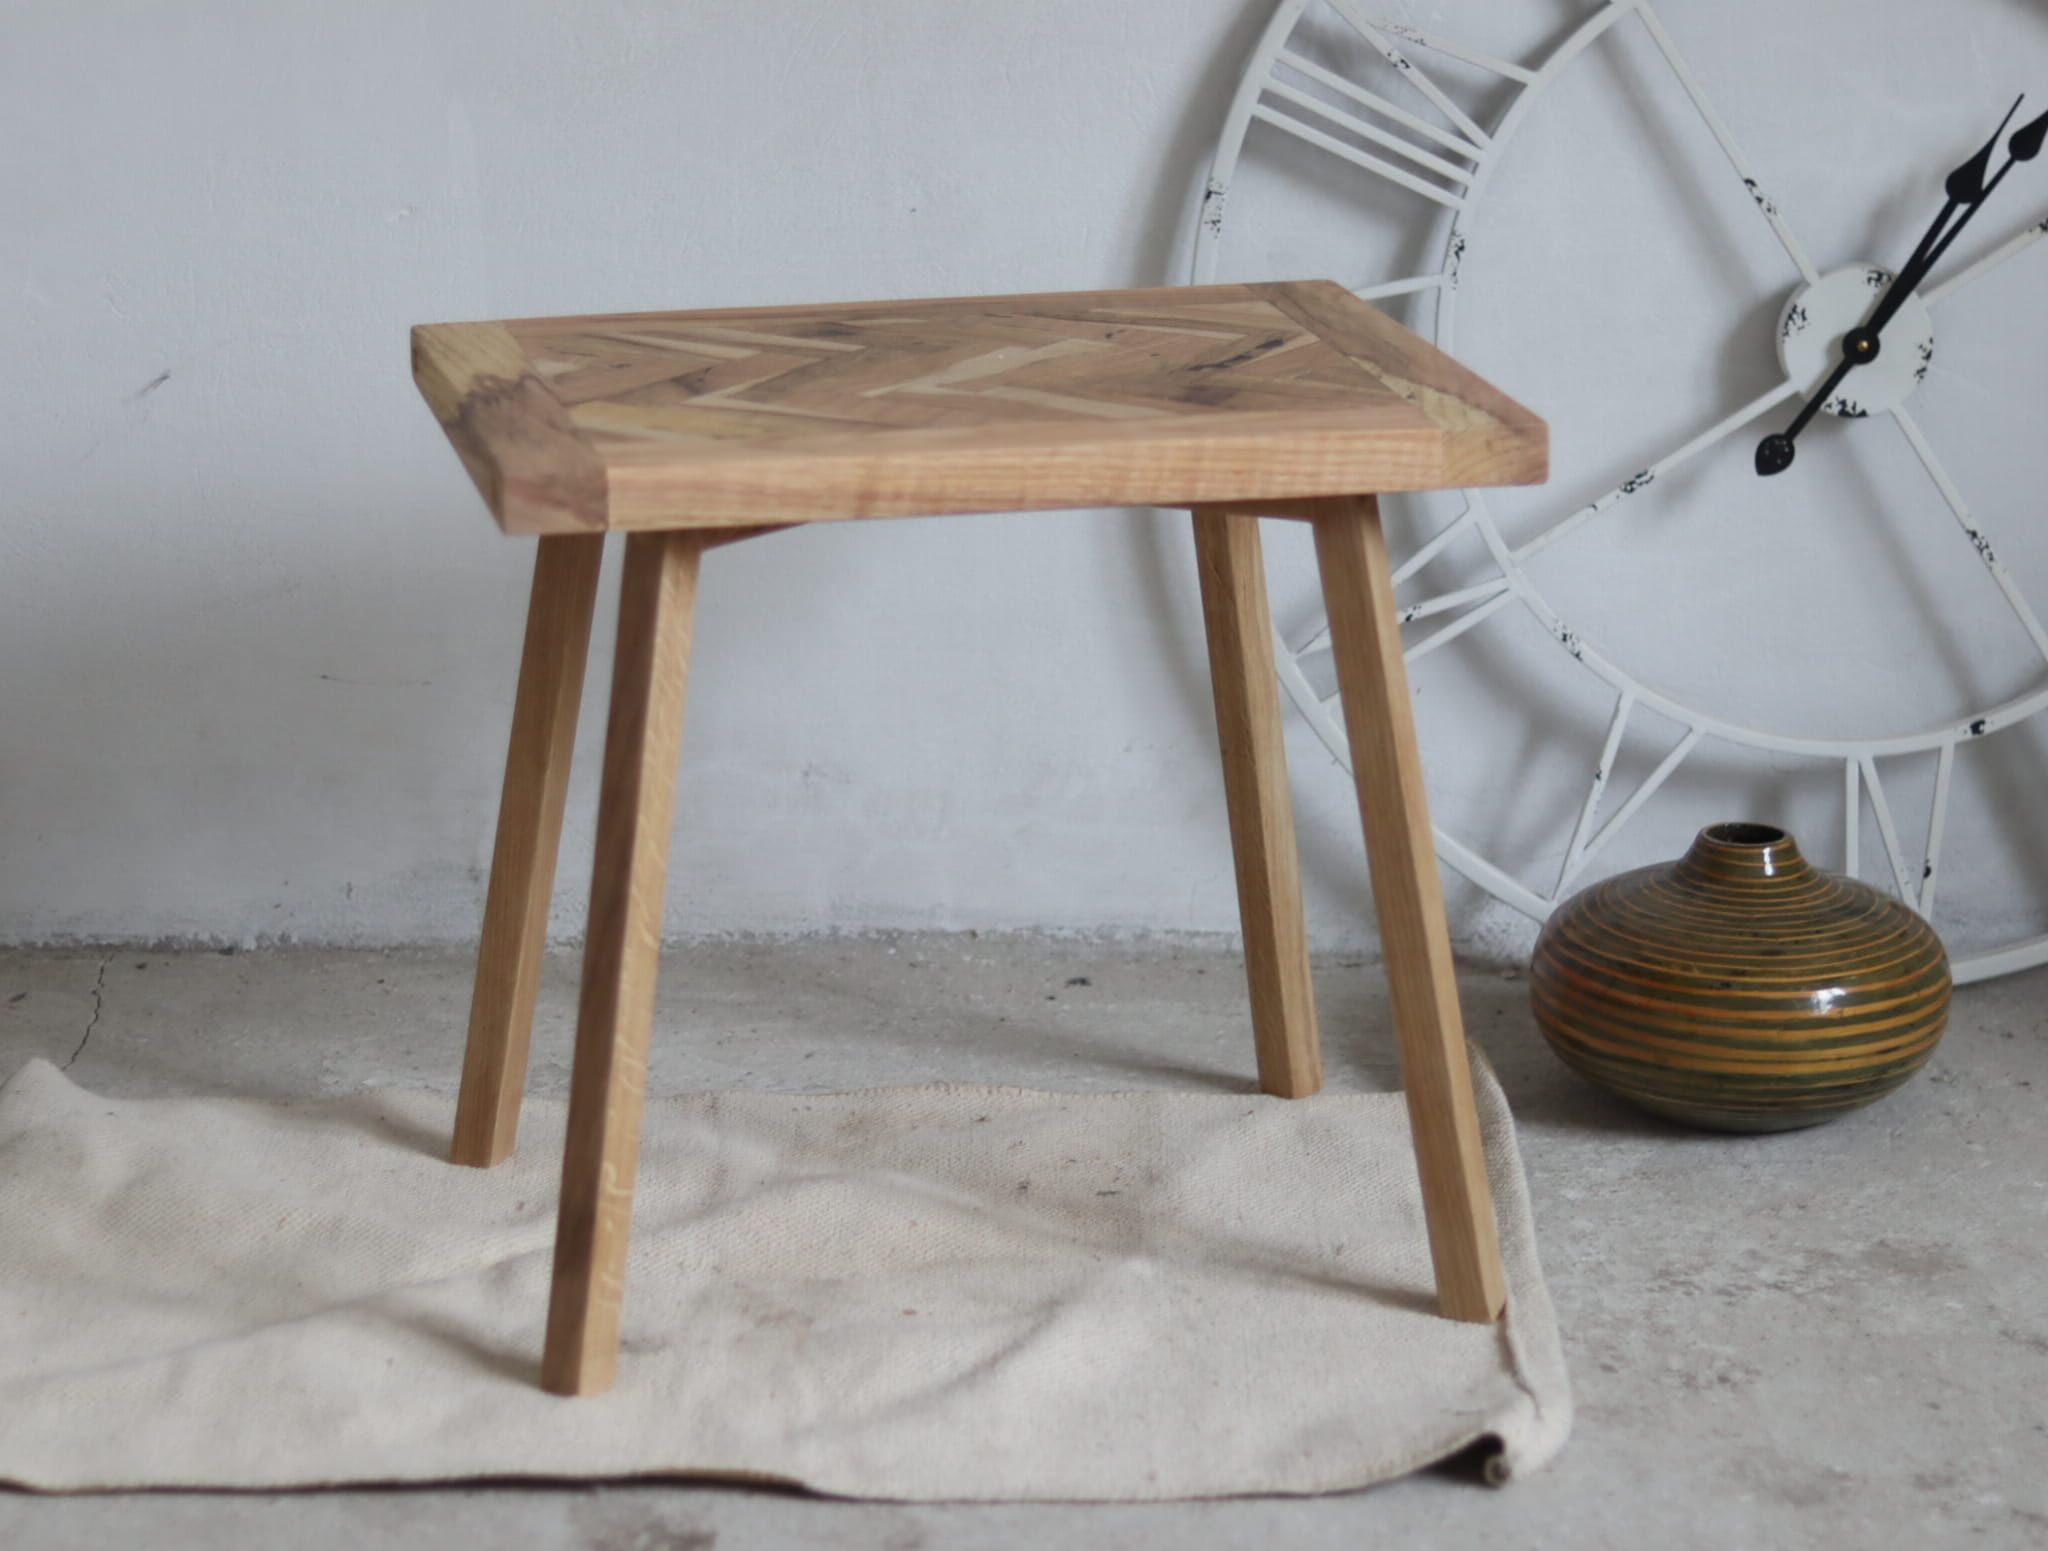 Drewniany mały stolik kawowy ręcznie wykonany z drewna dębowego.